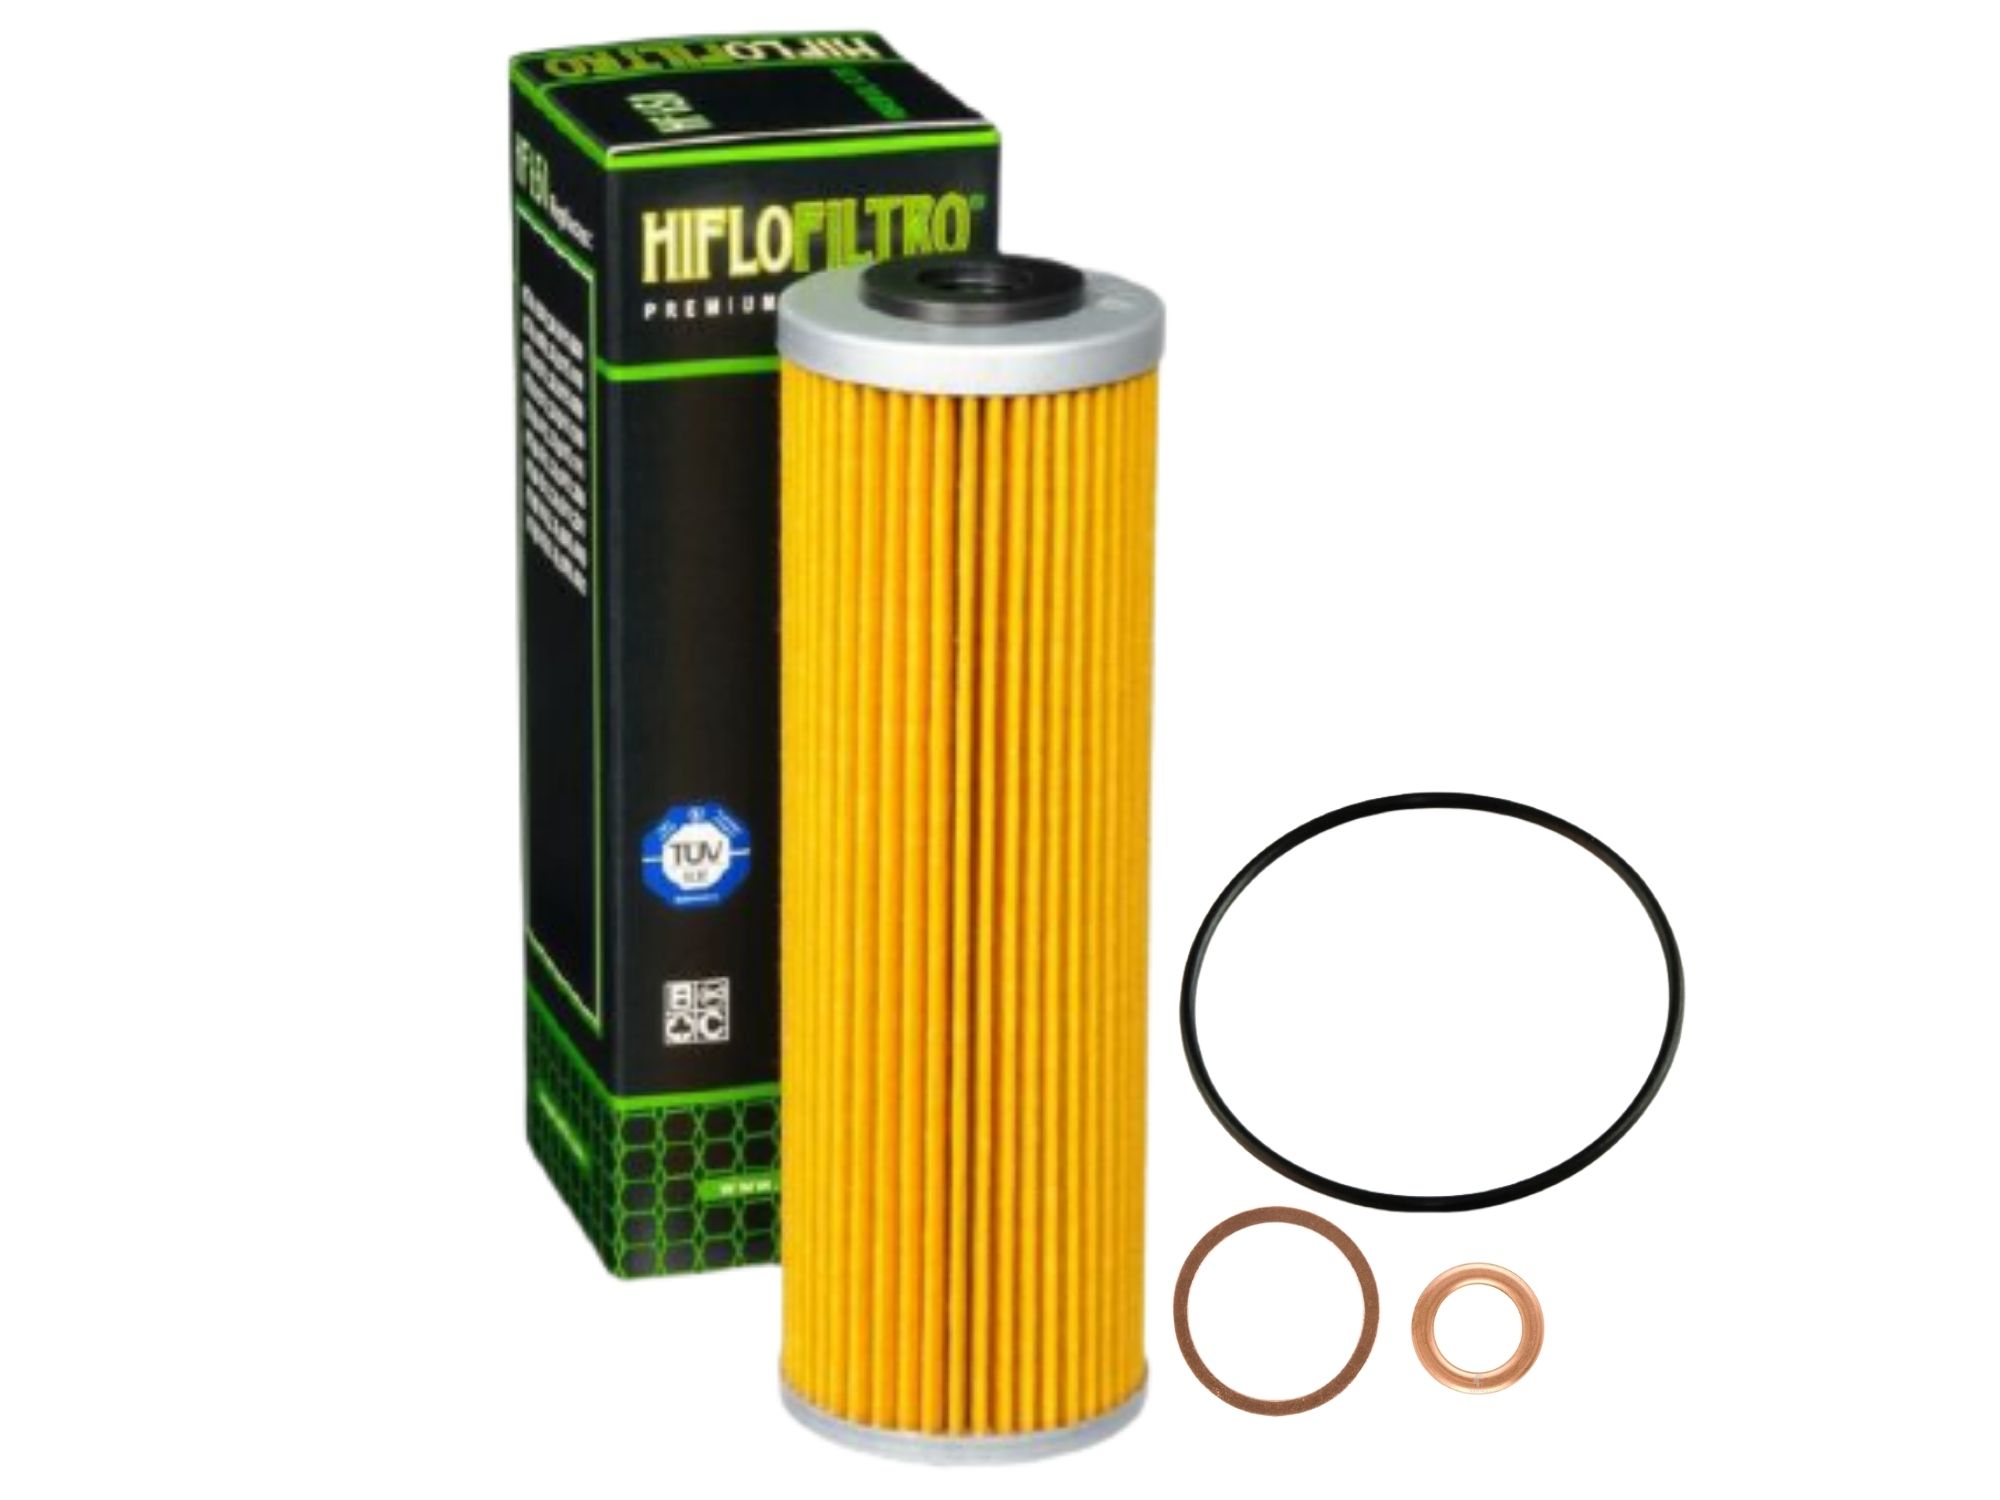 Oil filter kit suitable for KTM 950 990 Adventure Supermoto Super Duke 04-13